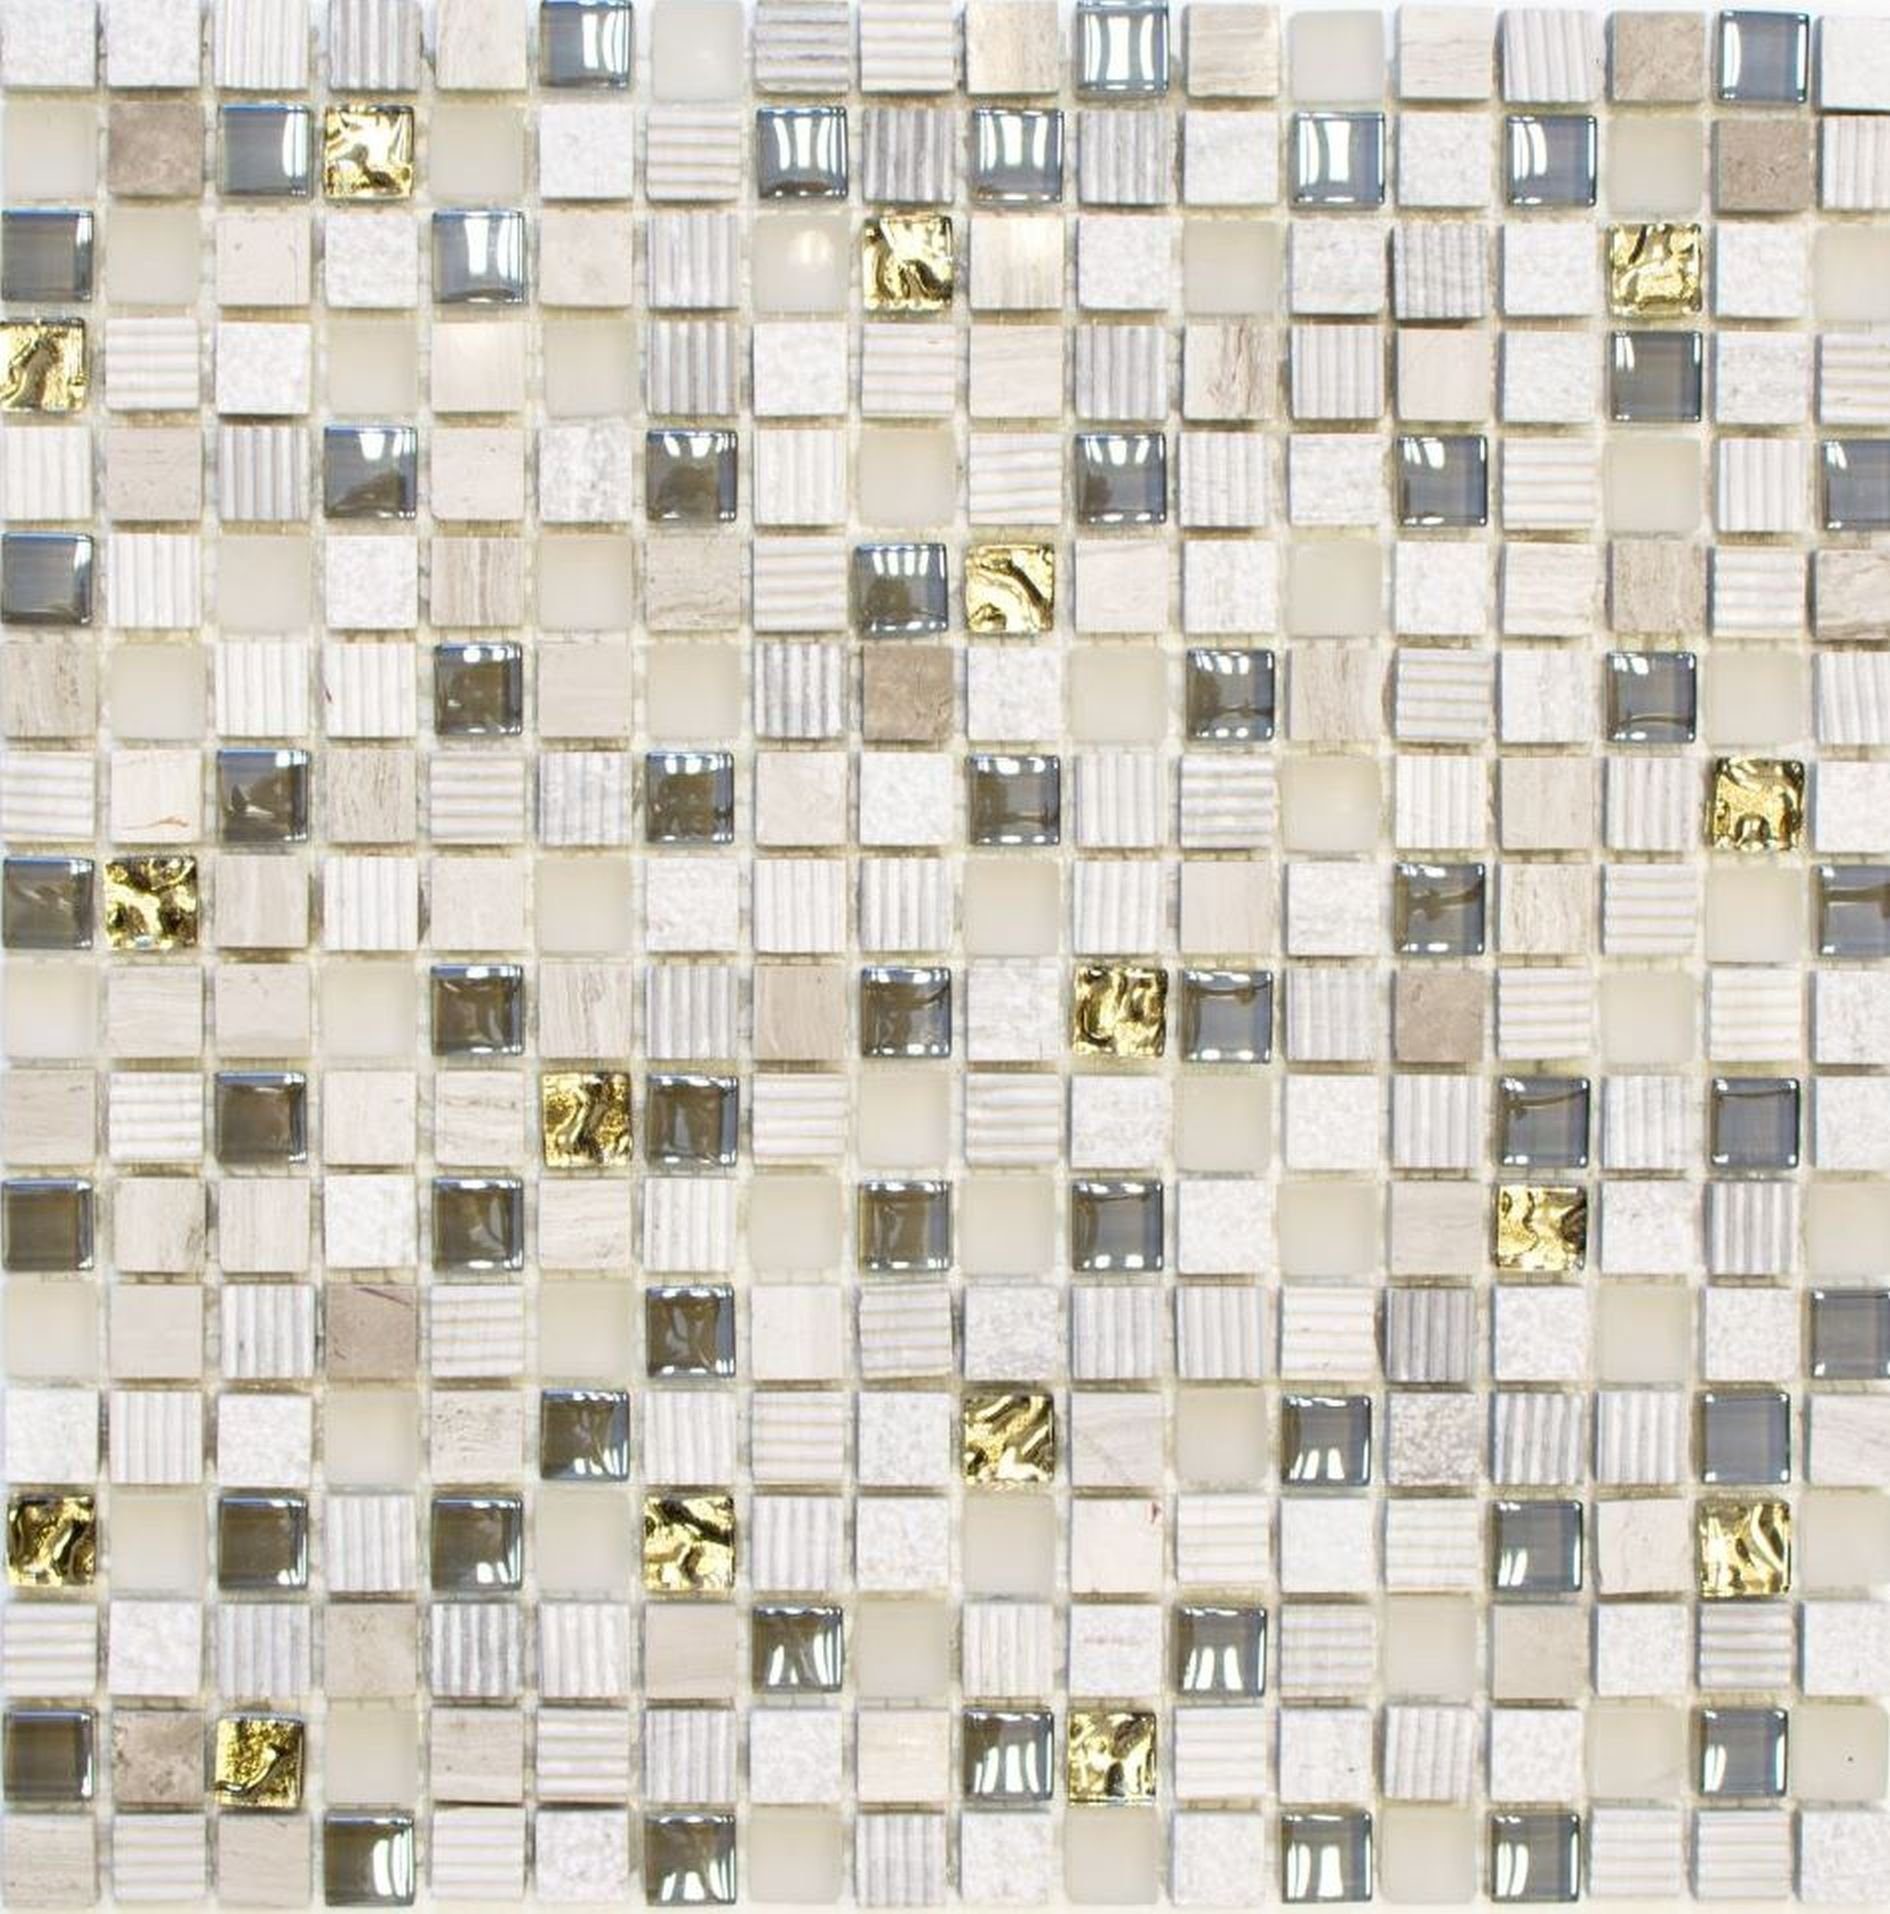 Mosani Mosaikfliesen Glasmosaik Naturstein Mosaikfliese hellgrau creme gold